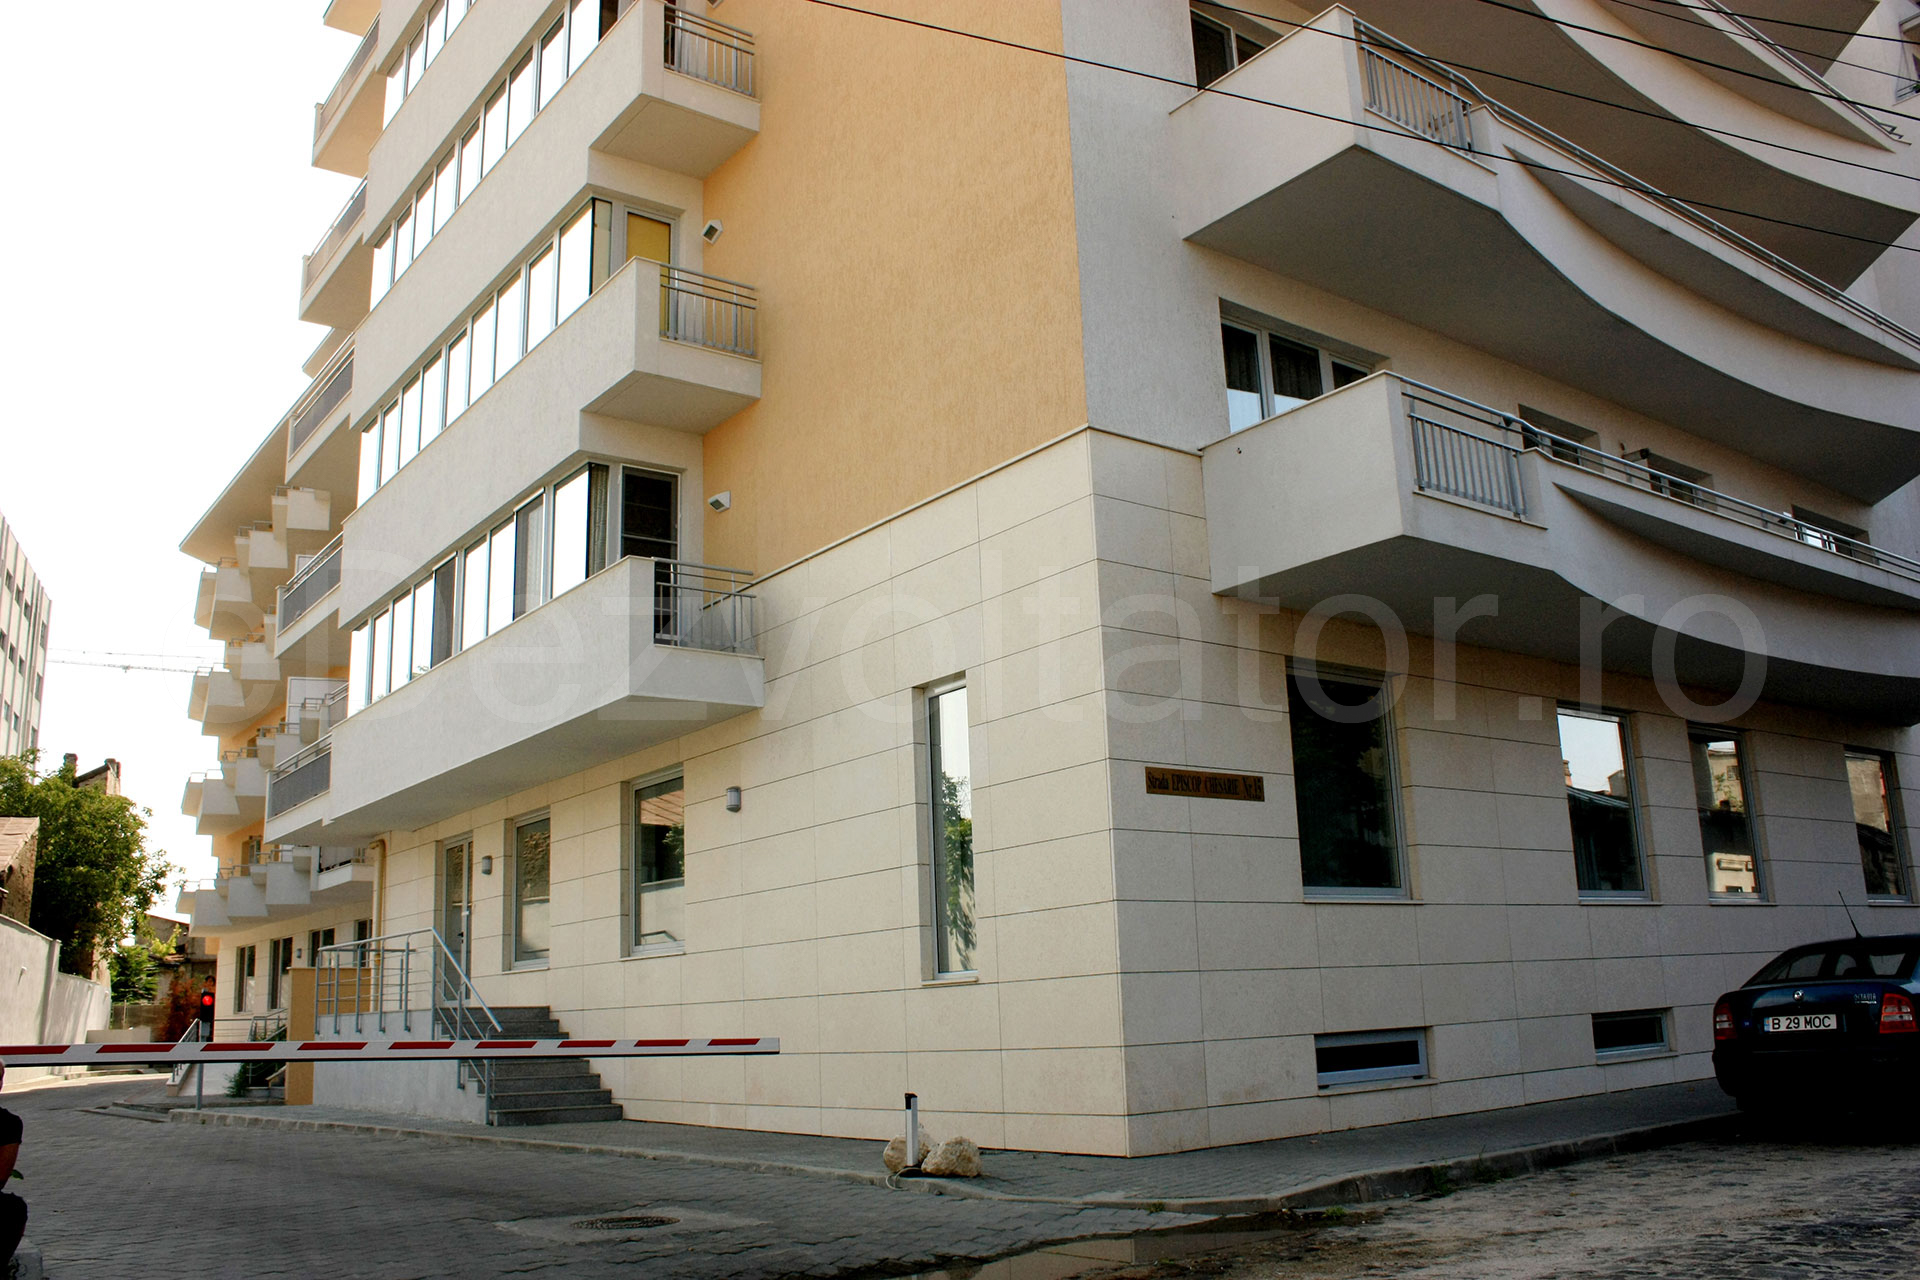 Ansamblul rezidențial 11298 din București